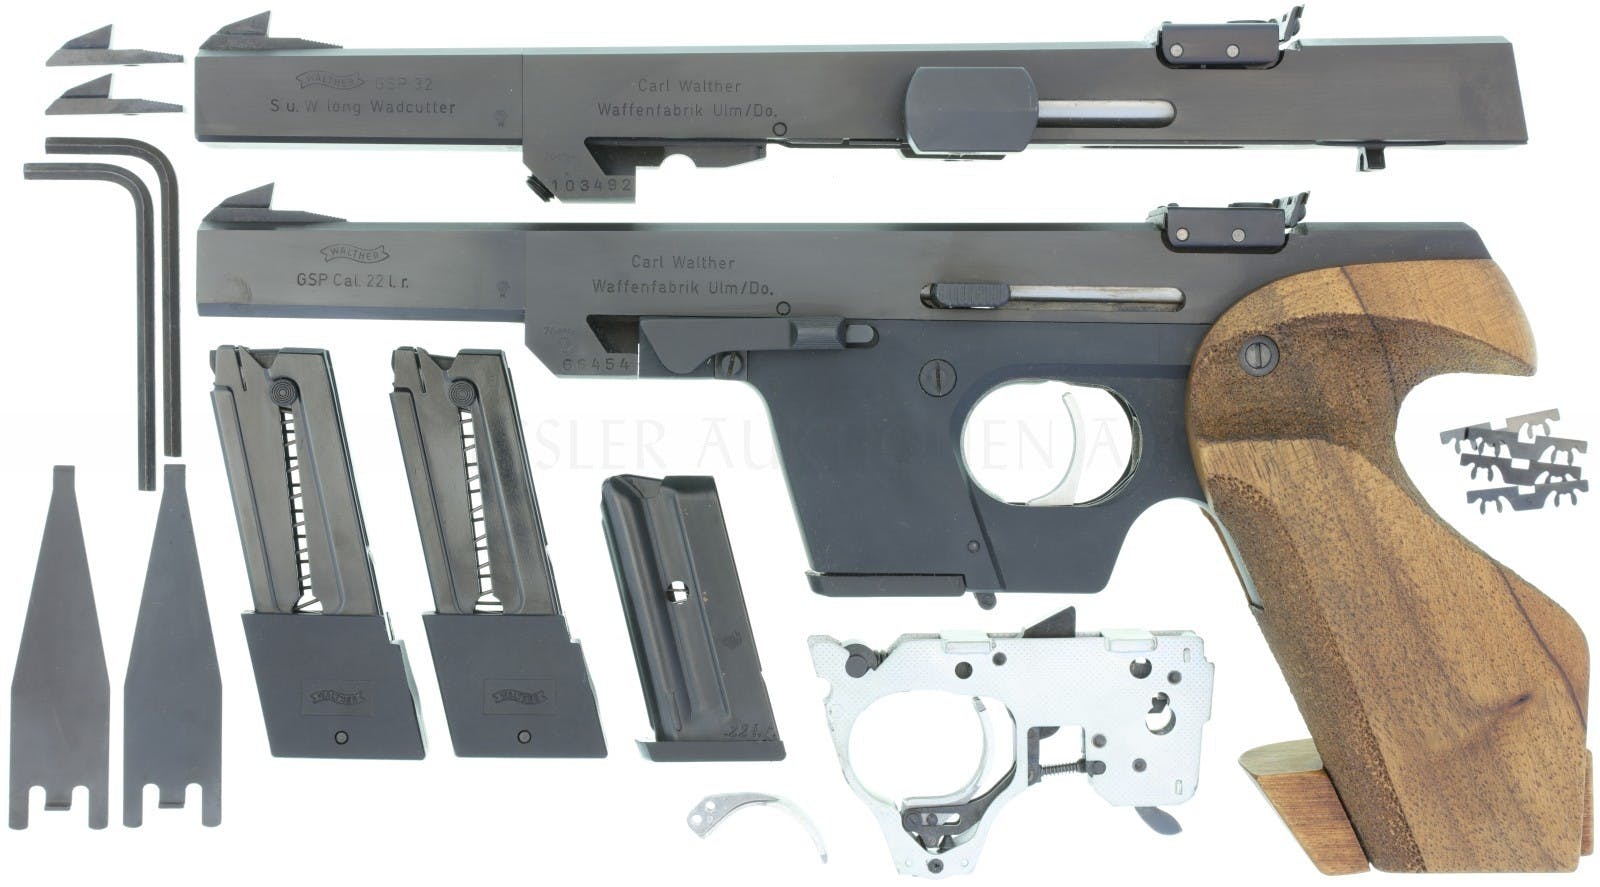 Deutsche Walther GSP .22lr mit Wechselsystem in .32 S&W Long Wadcutter